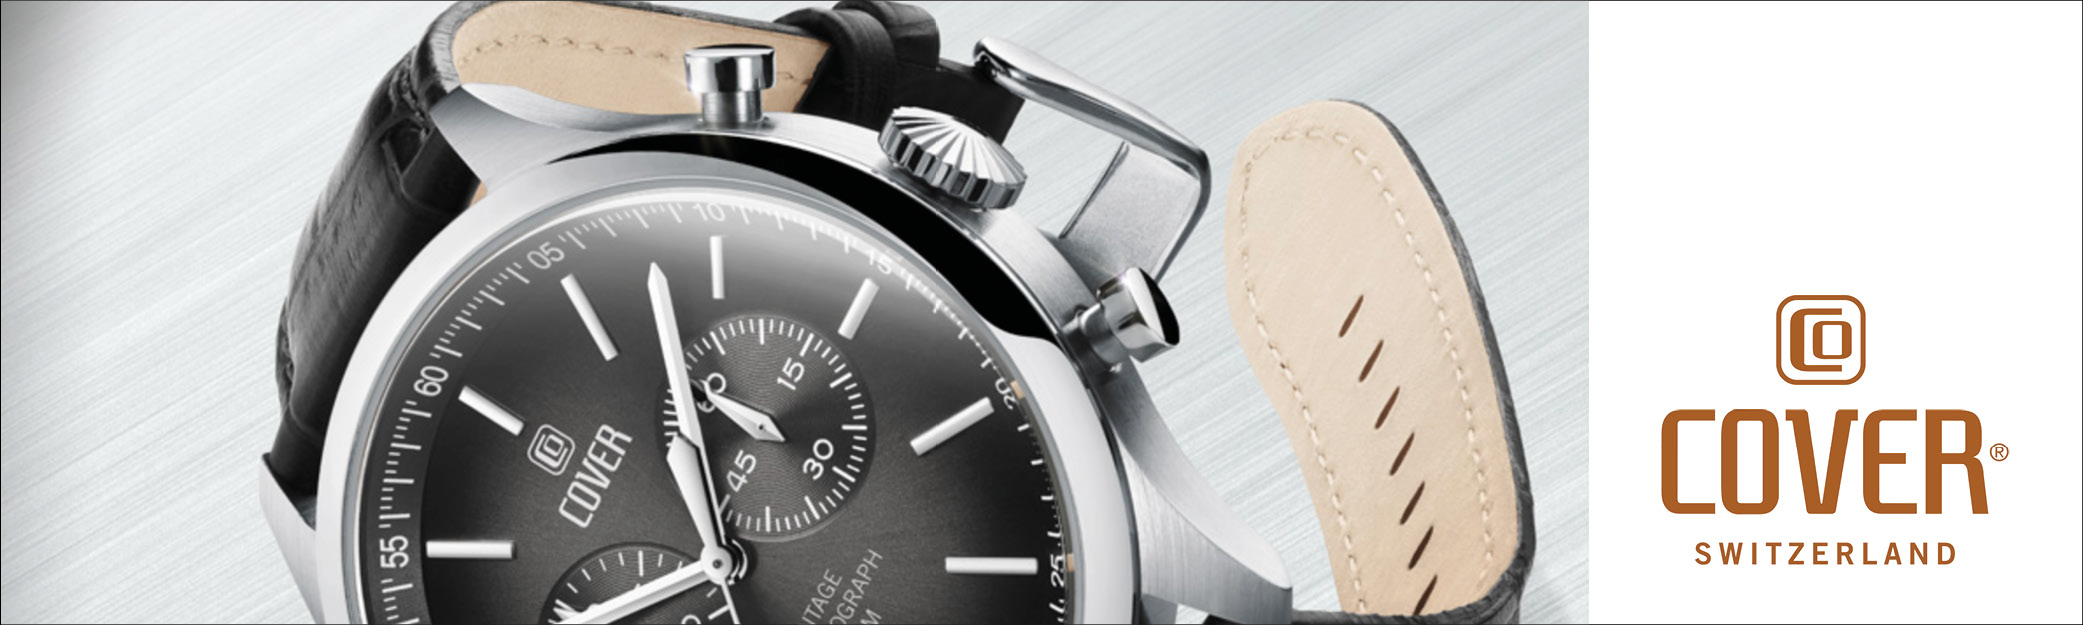 Cover er et stærkt Schweizisk ur mærke, hvor du for rimelige penge får Swiss ur kvalitet og lækkert design